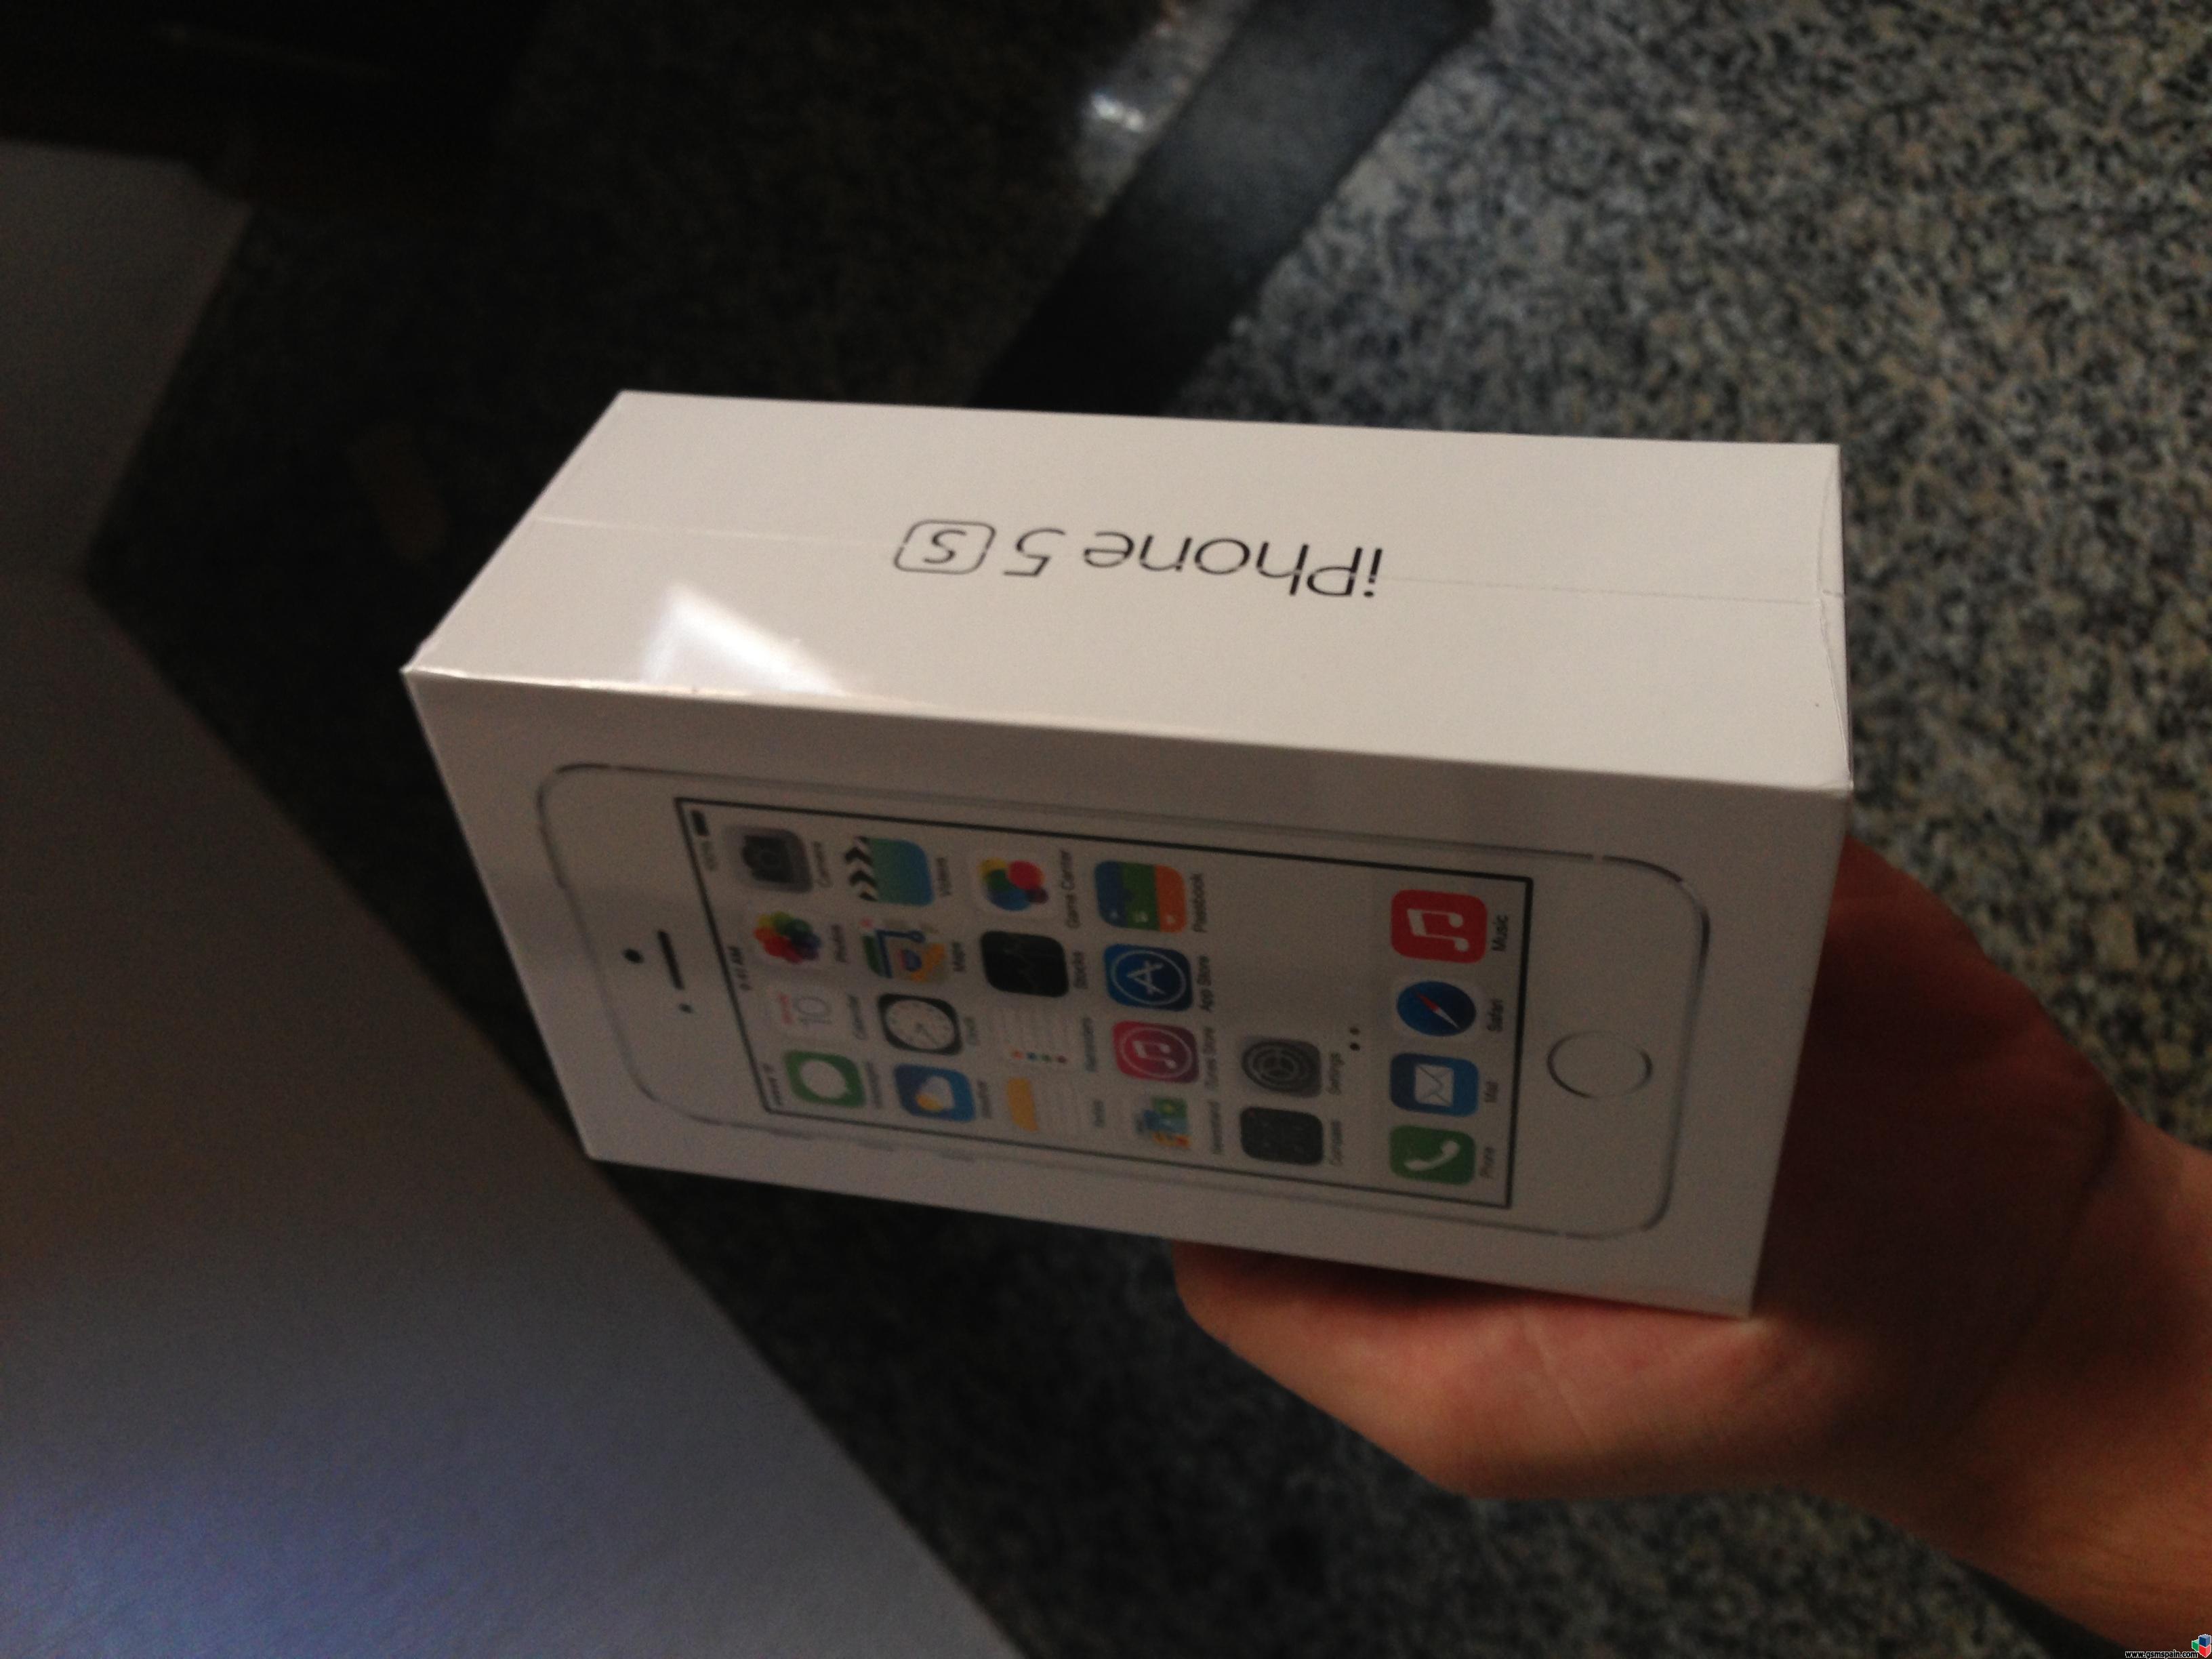 [AYUDA] Se puede comprar un iPhone 5S en la web de UK y que lo enven a Espaa?